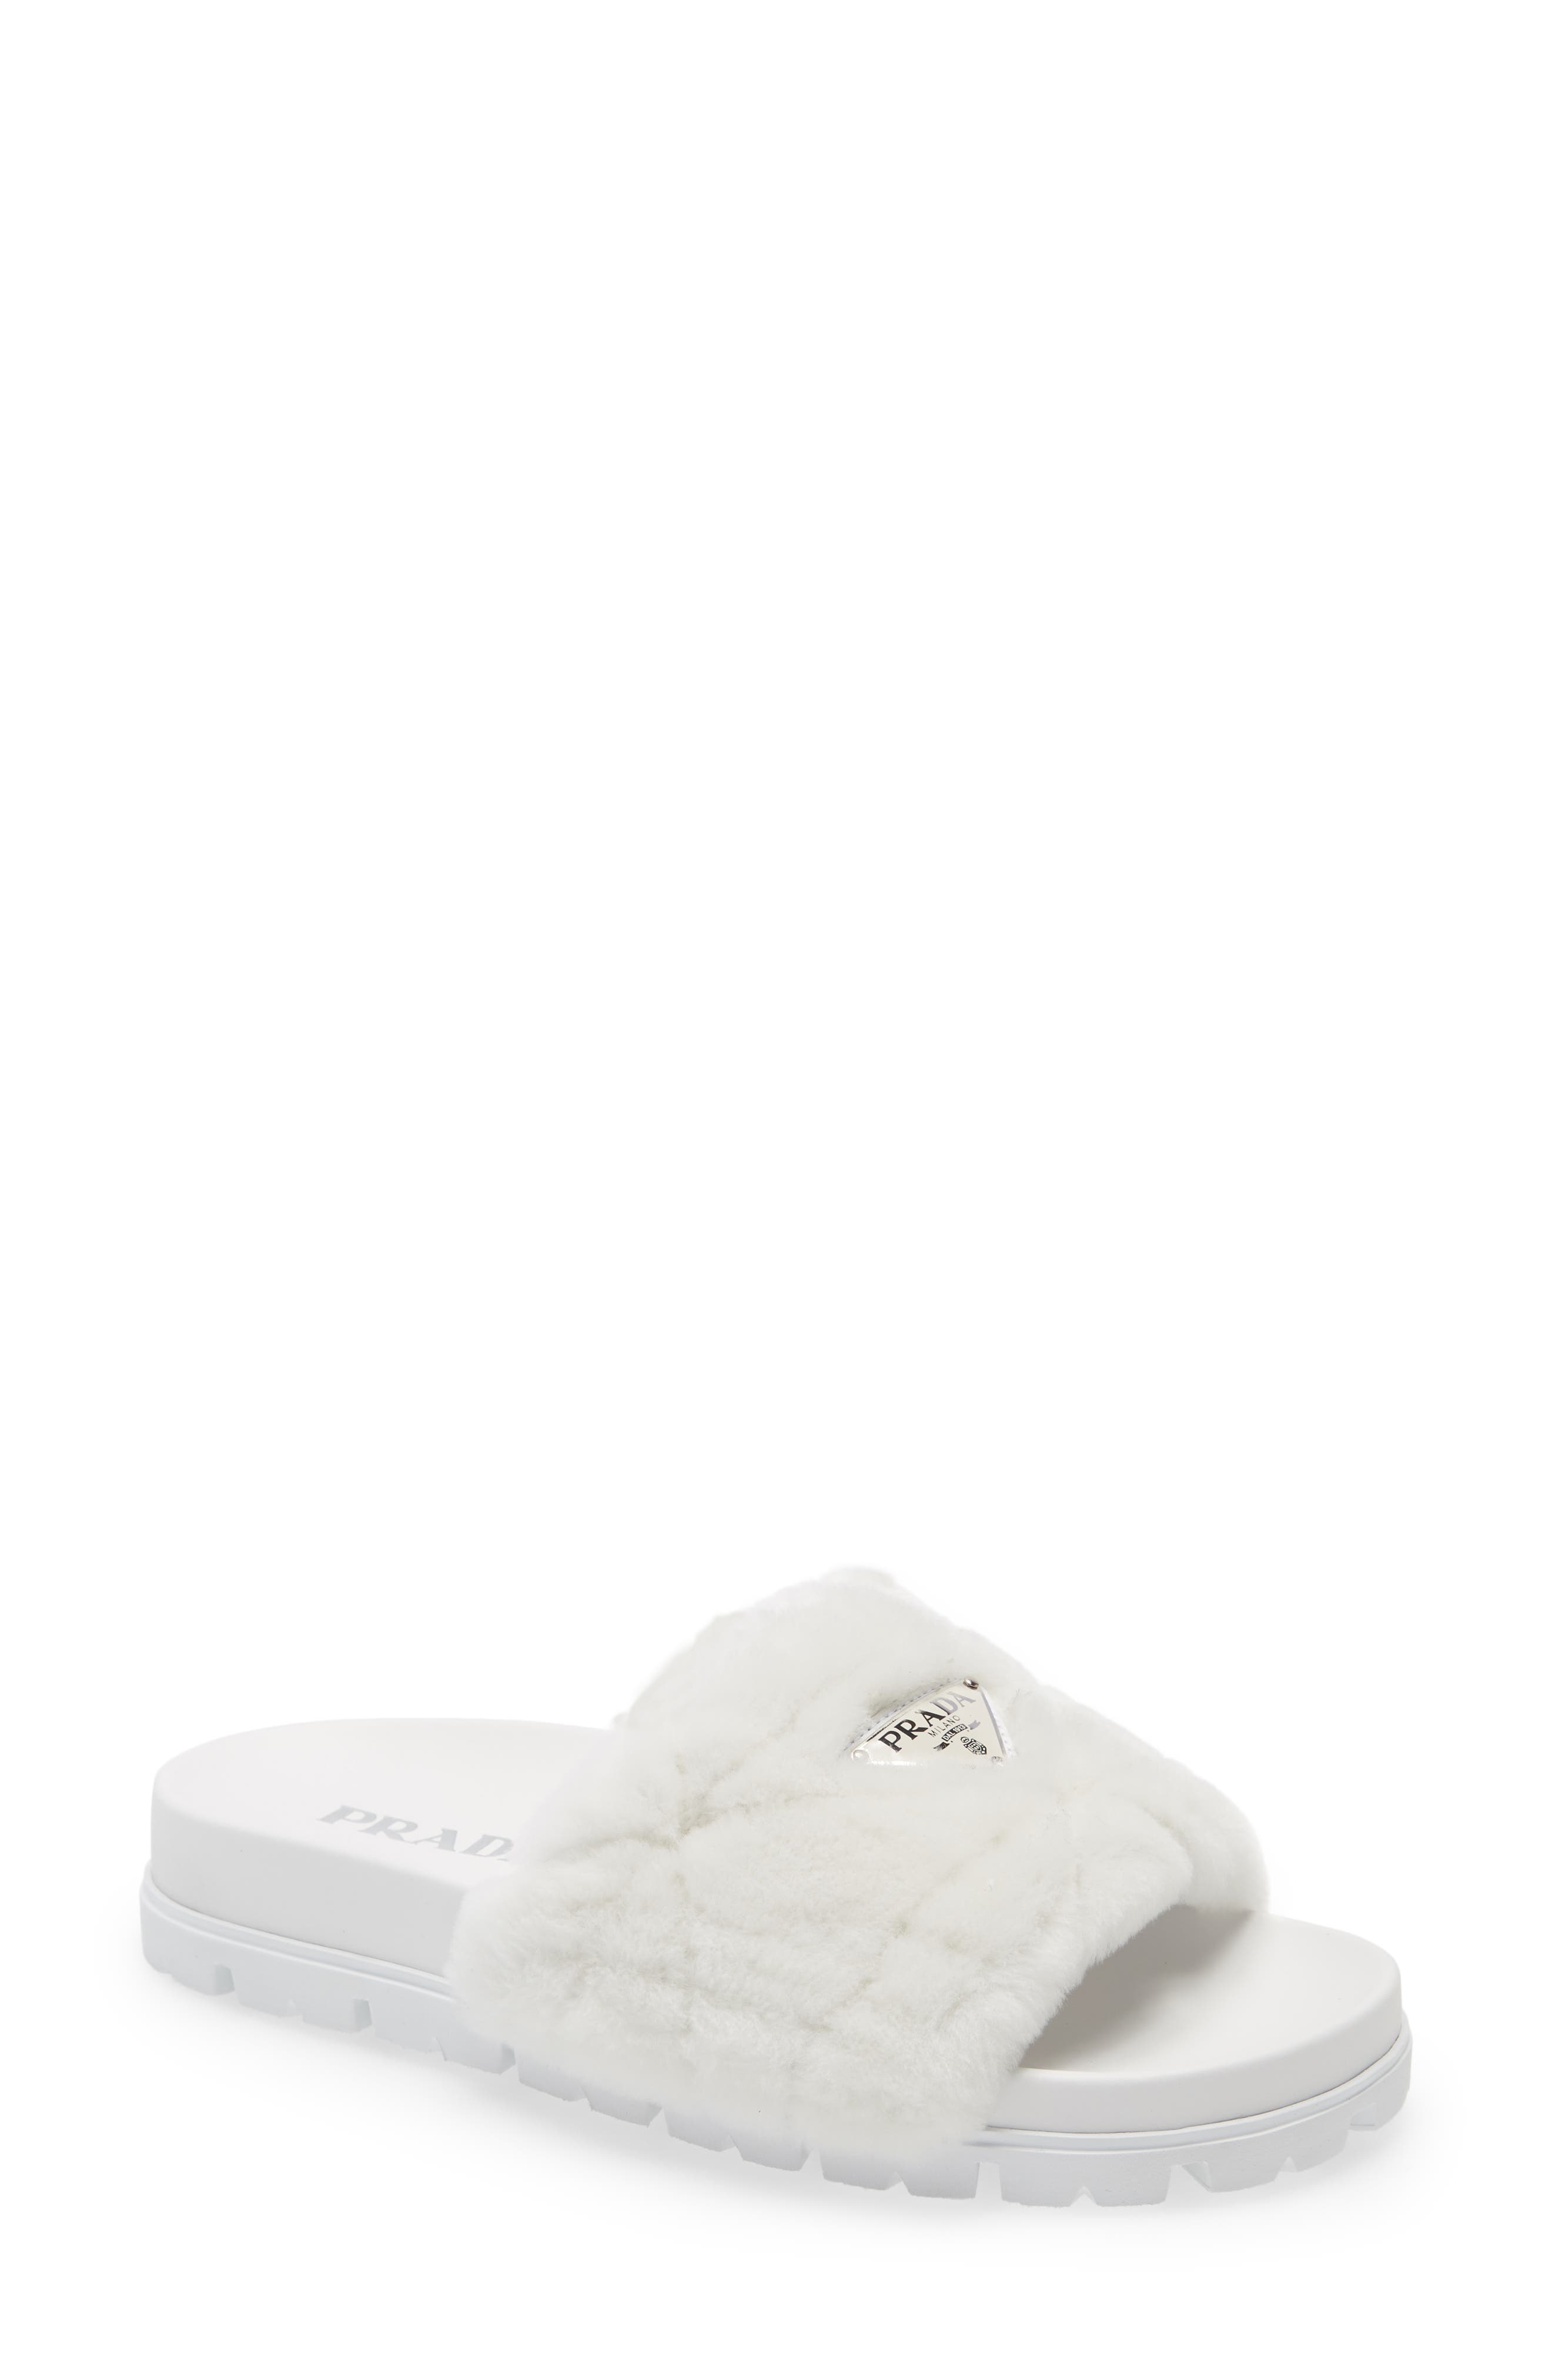 Prada Logo Genuine Shearling Slide Sandal in Bianco at Nordstrom, Size 11Us